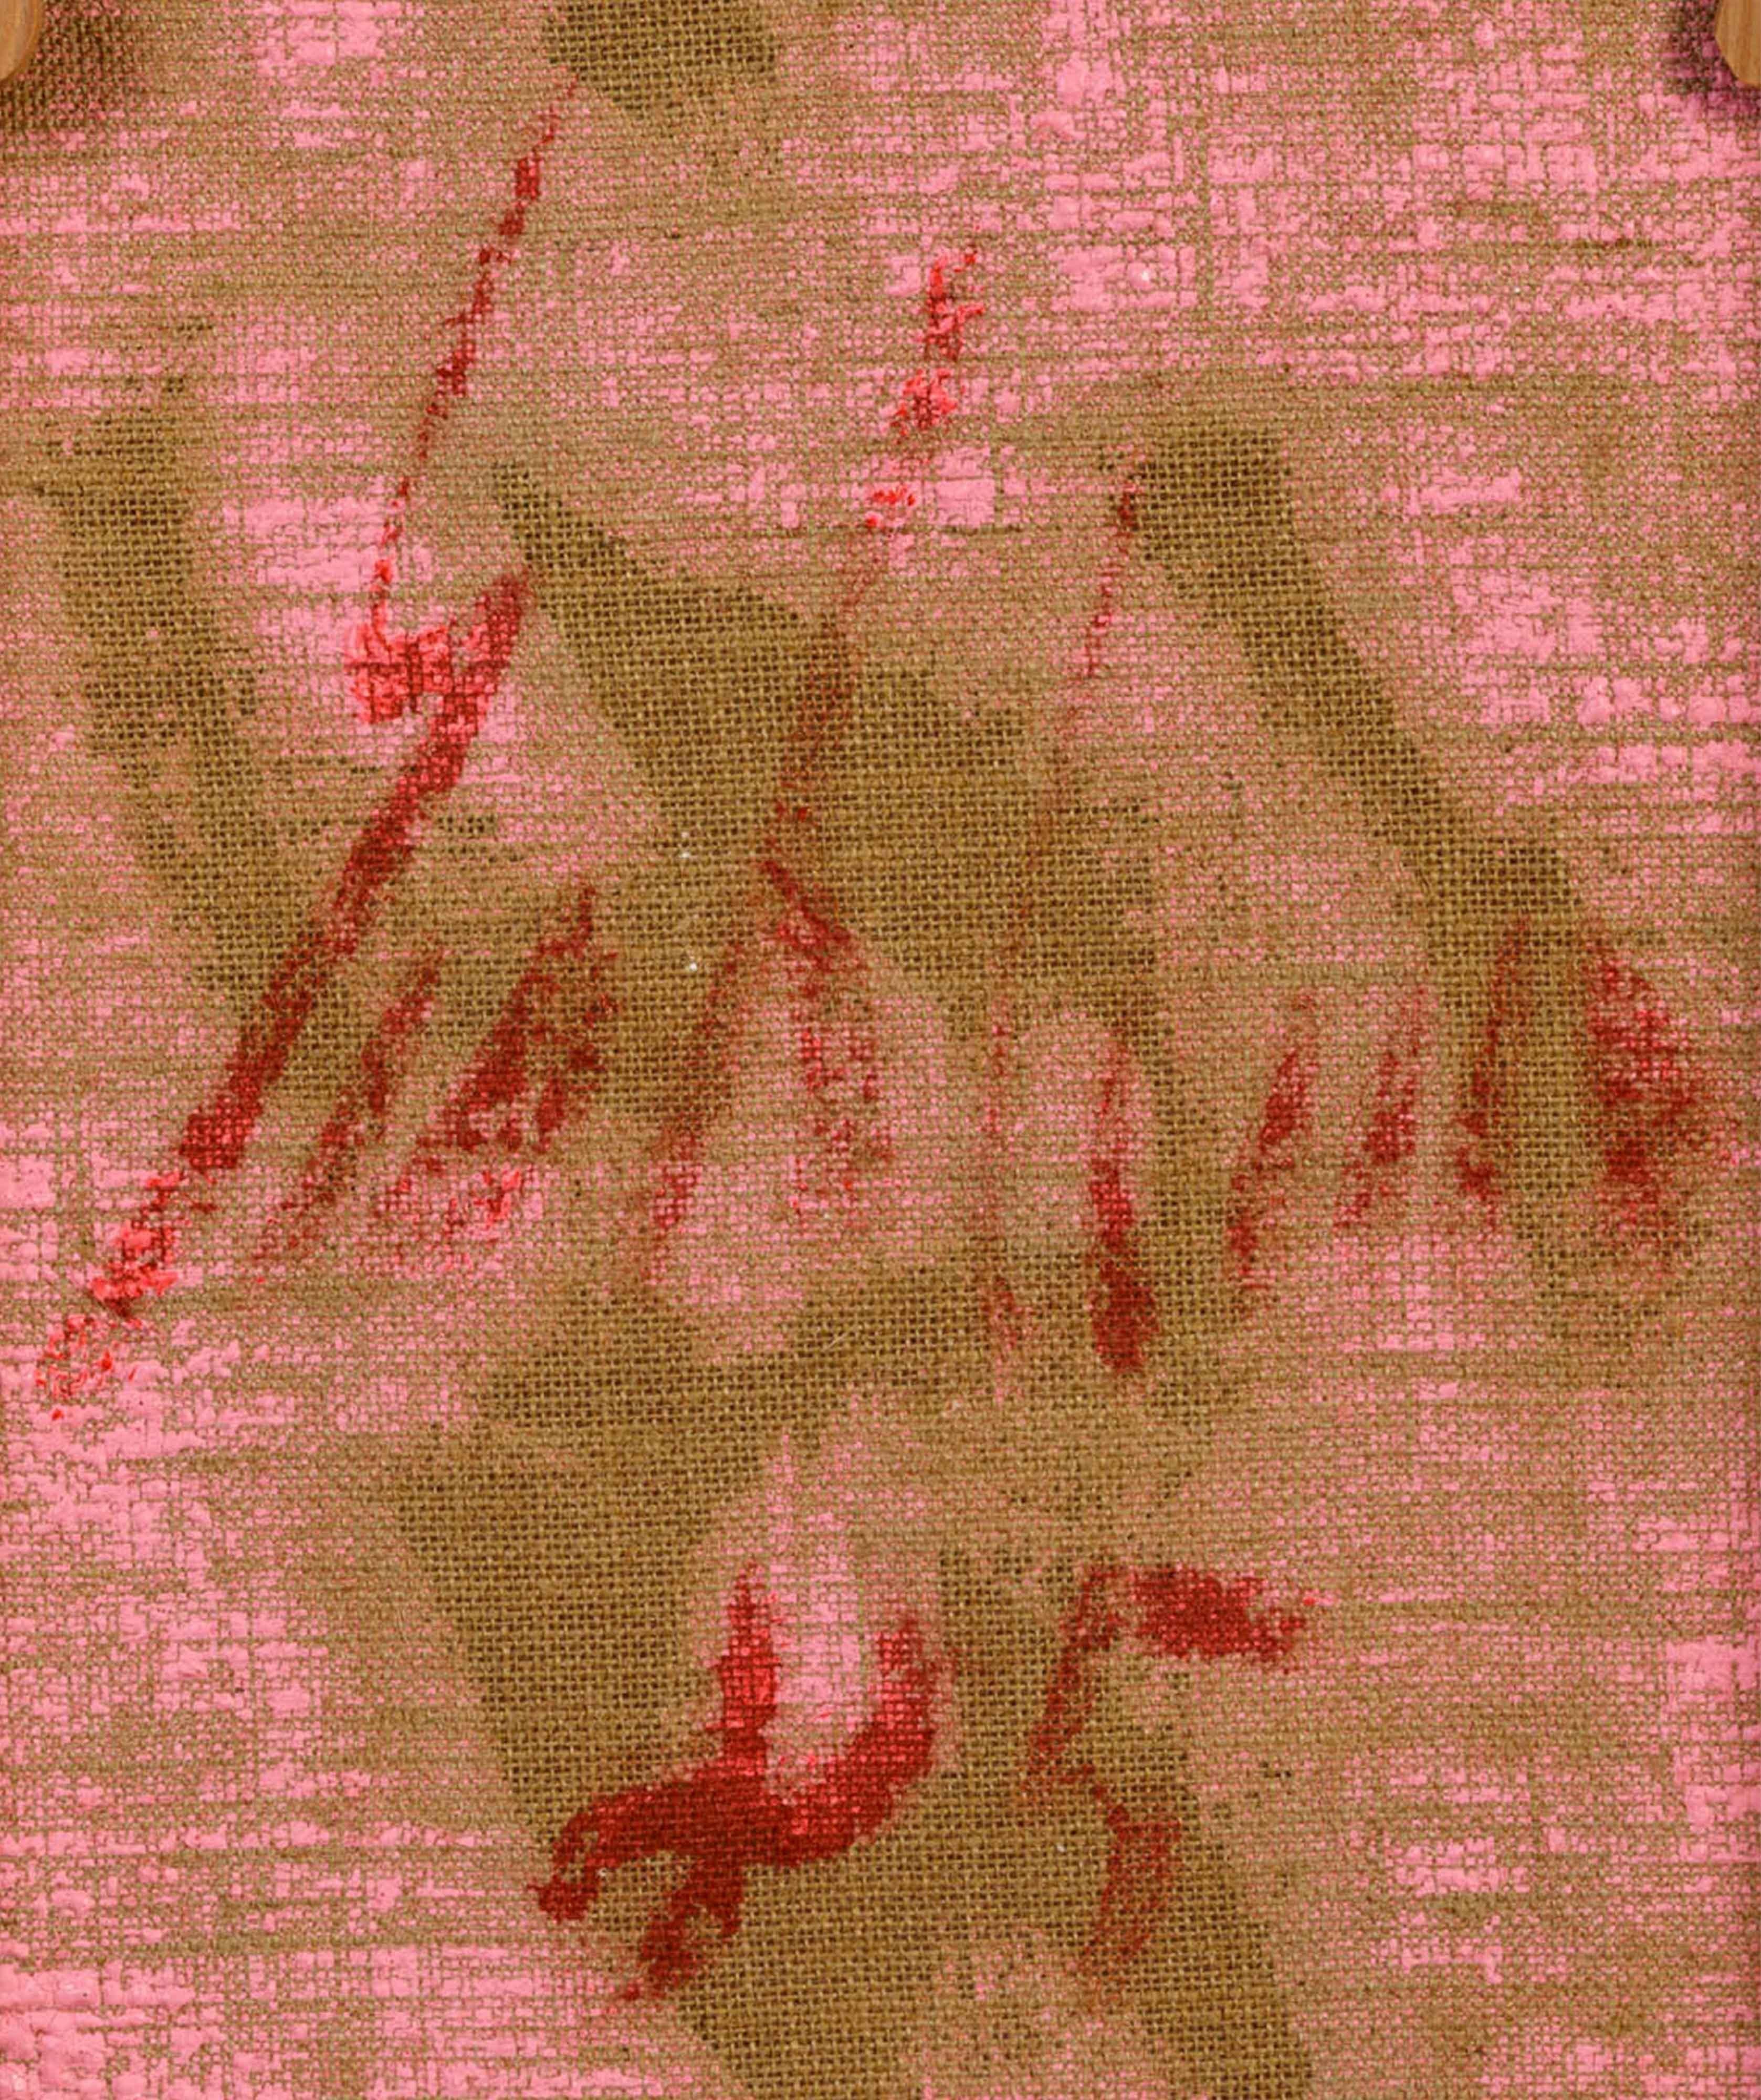 Une peinture unique de Salvatore Emblema, datant des années 80, sol teinté sur toile. Signée et datée au verso, avec le numéro d'archivage à la succession de l'artiste au verso.

Expositions :

Emblema, Francolino, Scodro, à Glenda Cinquegrana Art